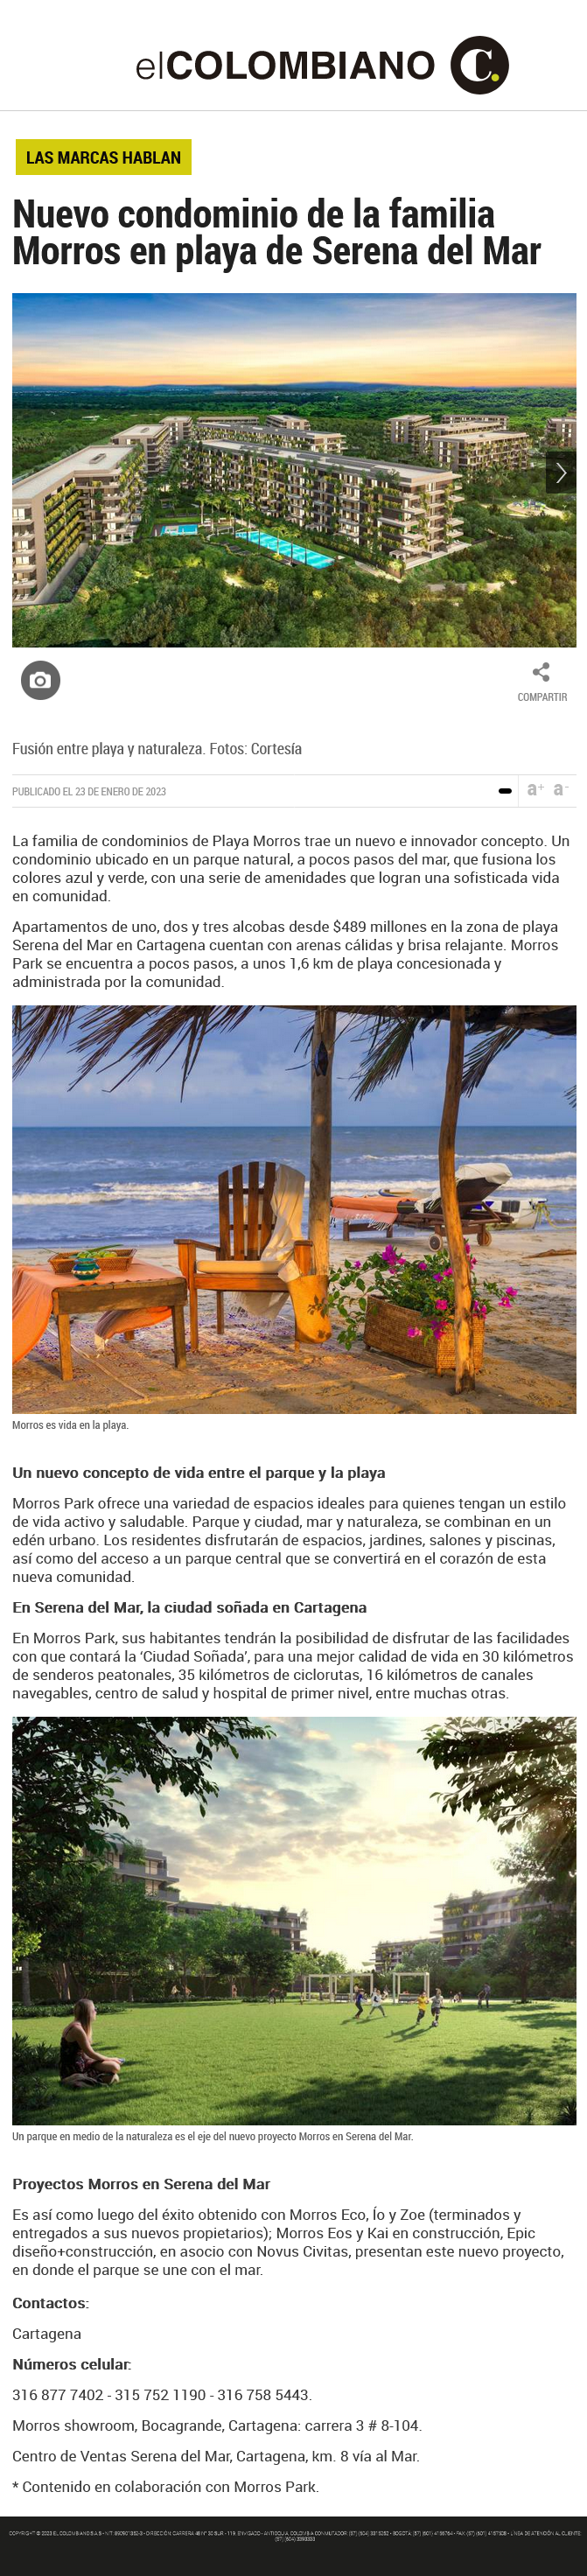 Nuevo condominio de la familia morros en playa de Serena del Mar